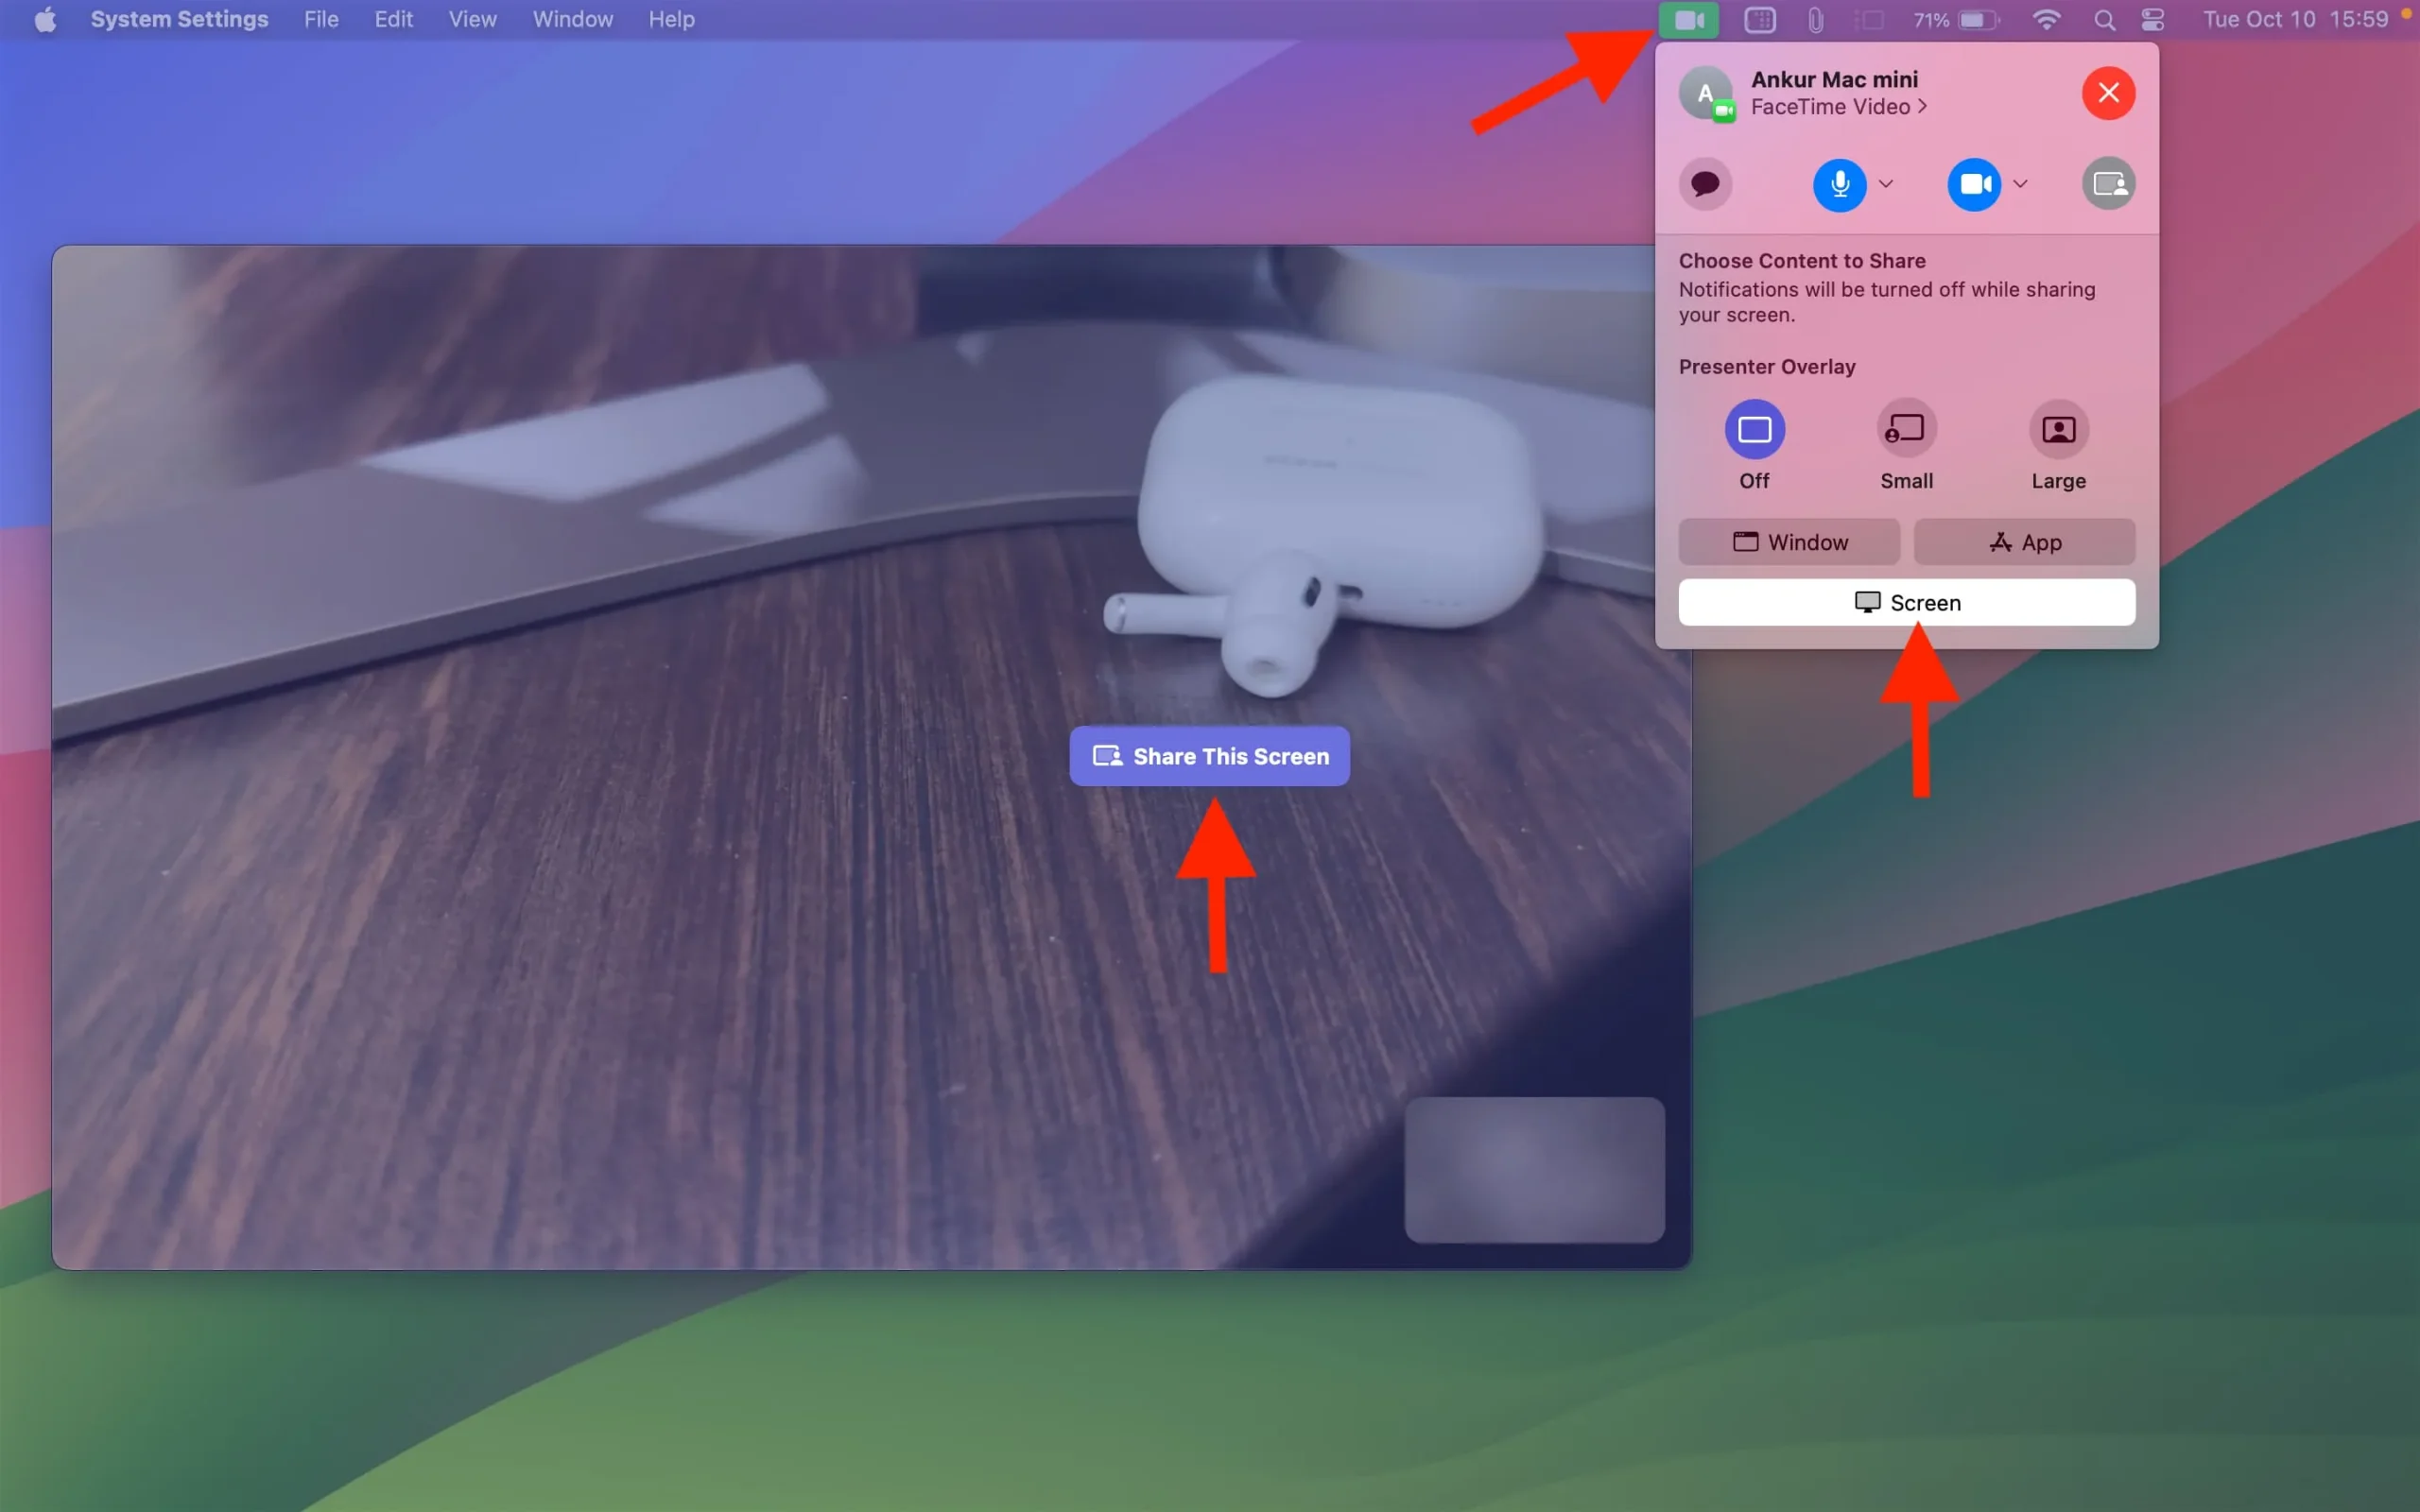 Teilen Sie Ihren gesamten Bildschirm während eines FaceTime-Anrufs auf dem Mac